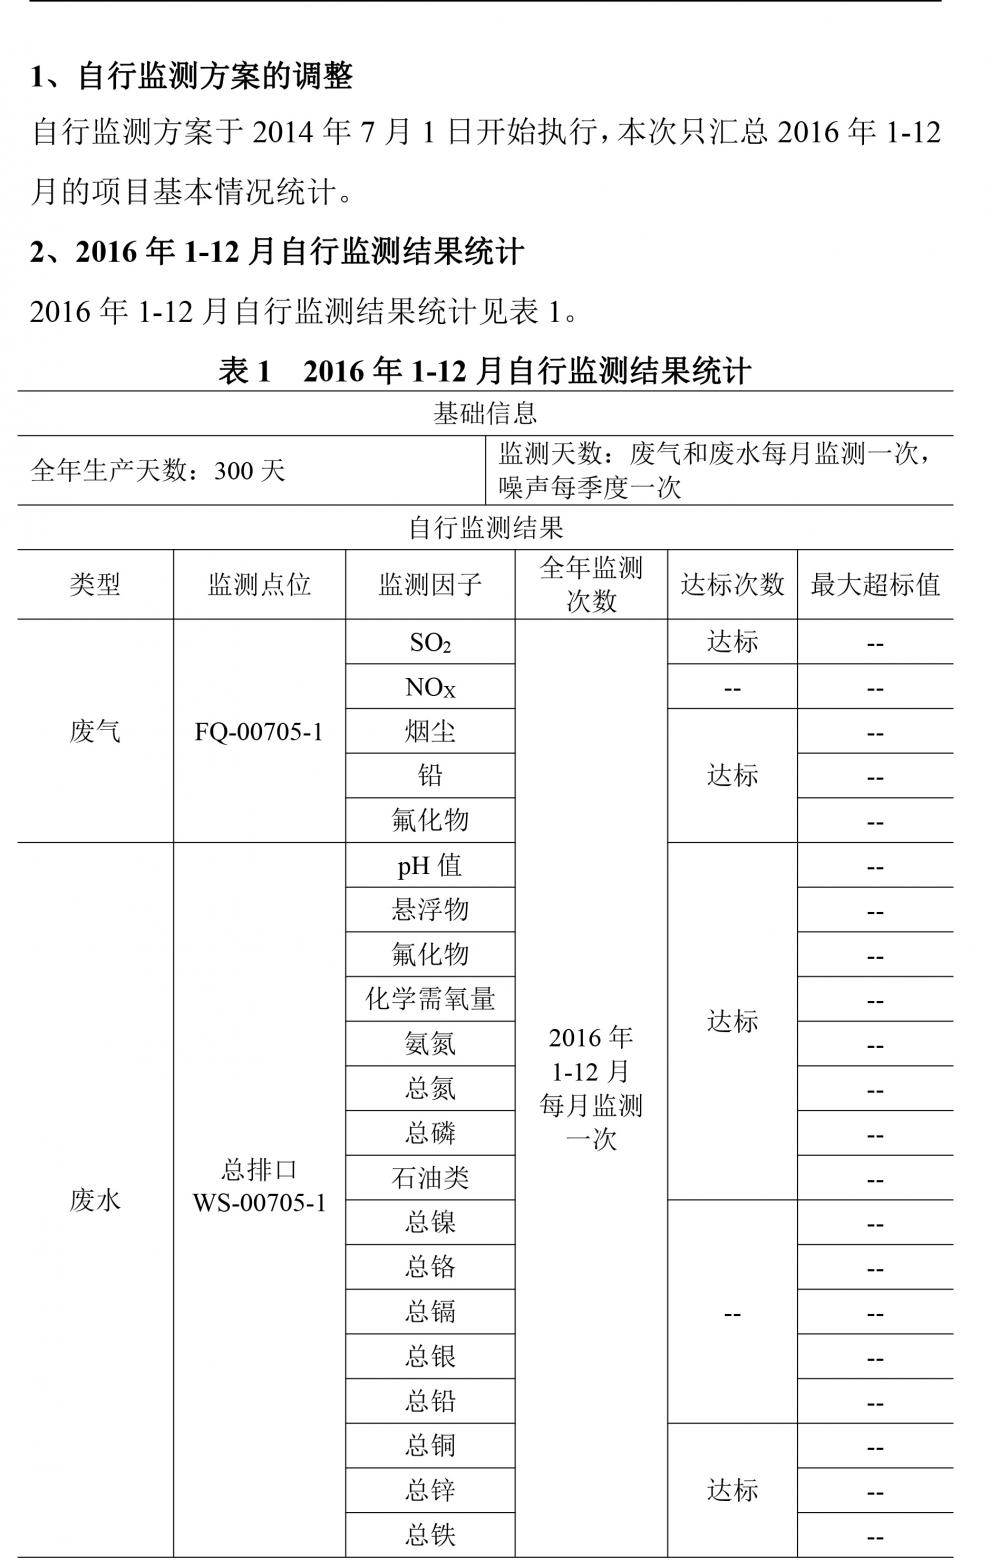 广东天马铝业有限公司2016自行监测年度报告-2.jpg